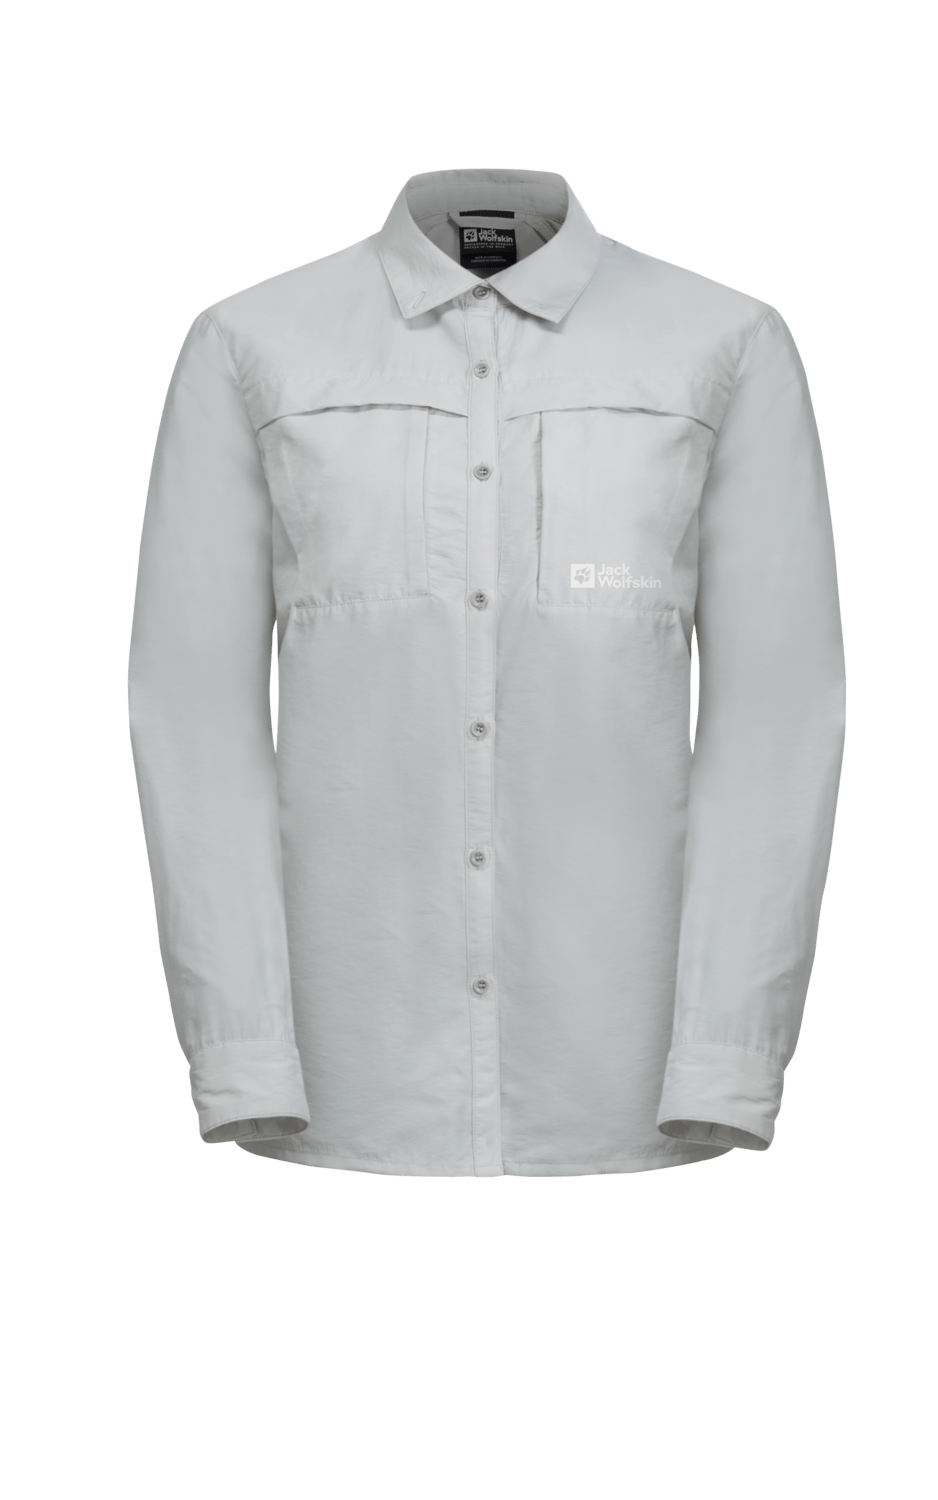 Jack Wolfskin Women's Barrier Long Sleeve Shirt Cool Grey